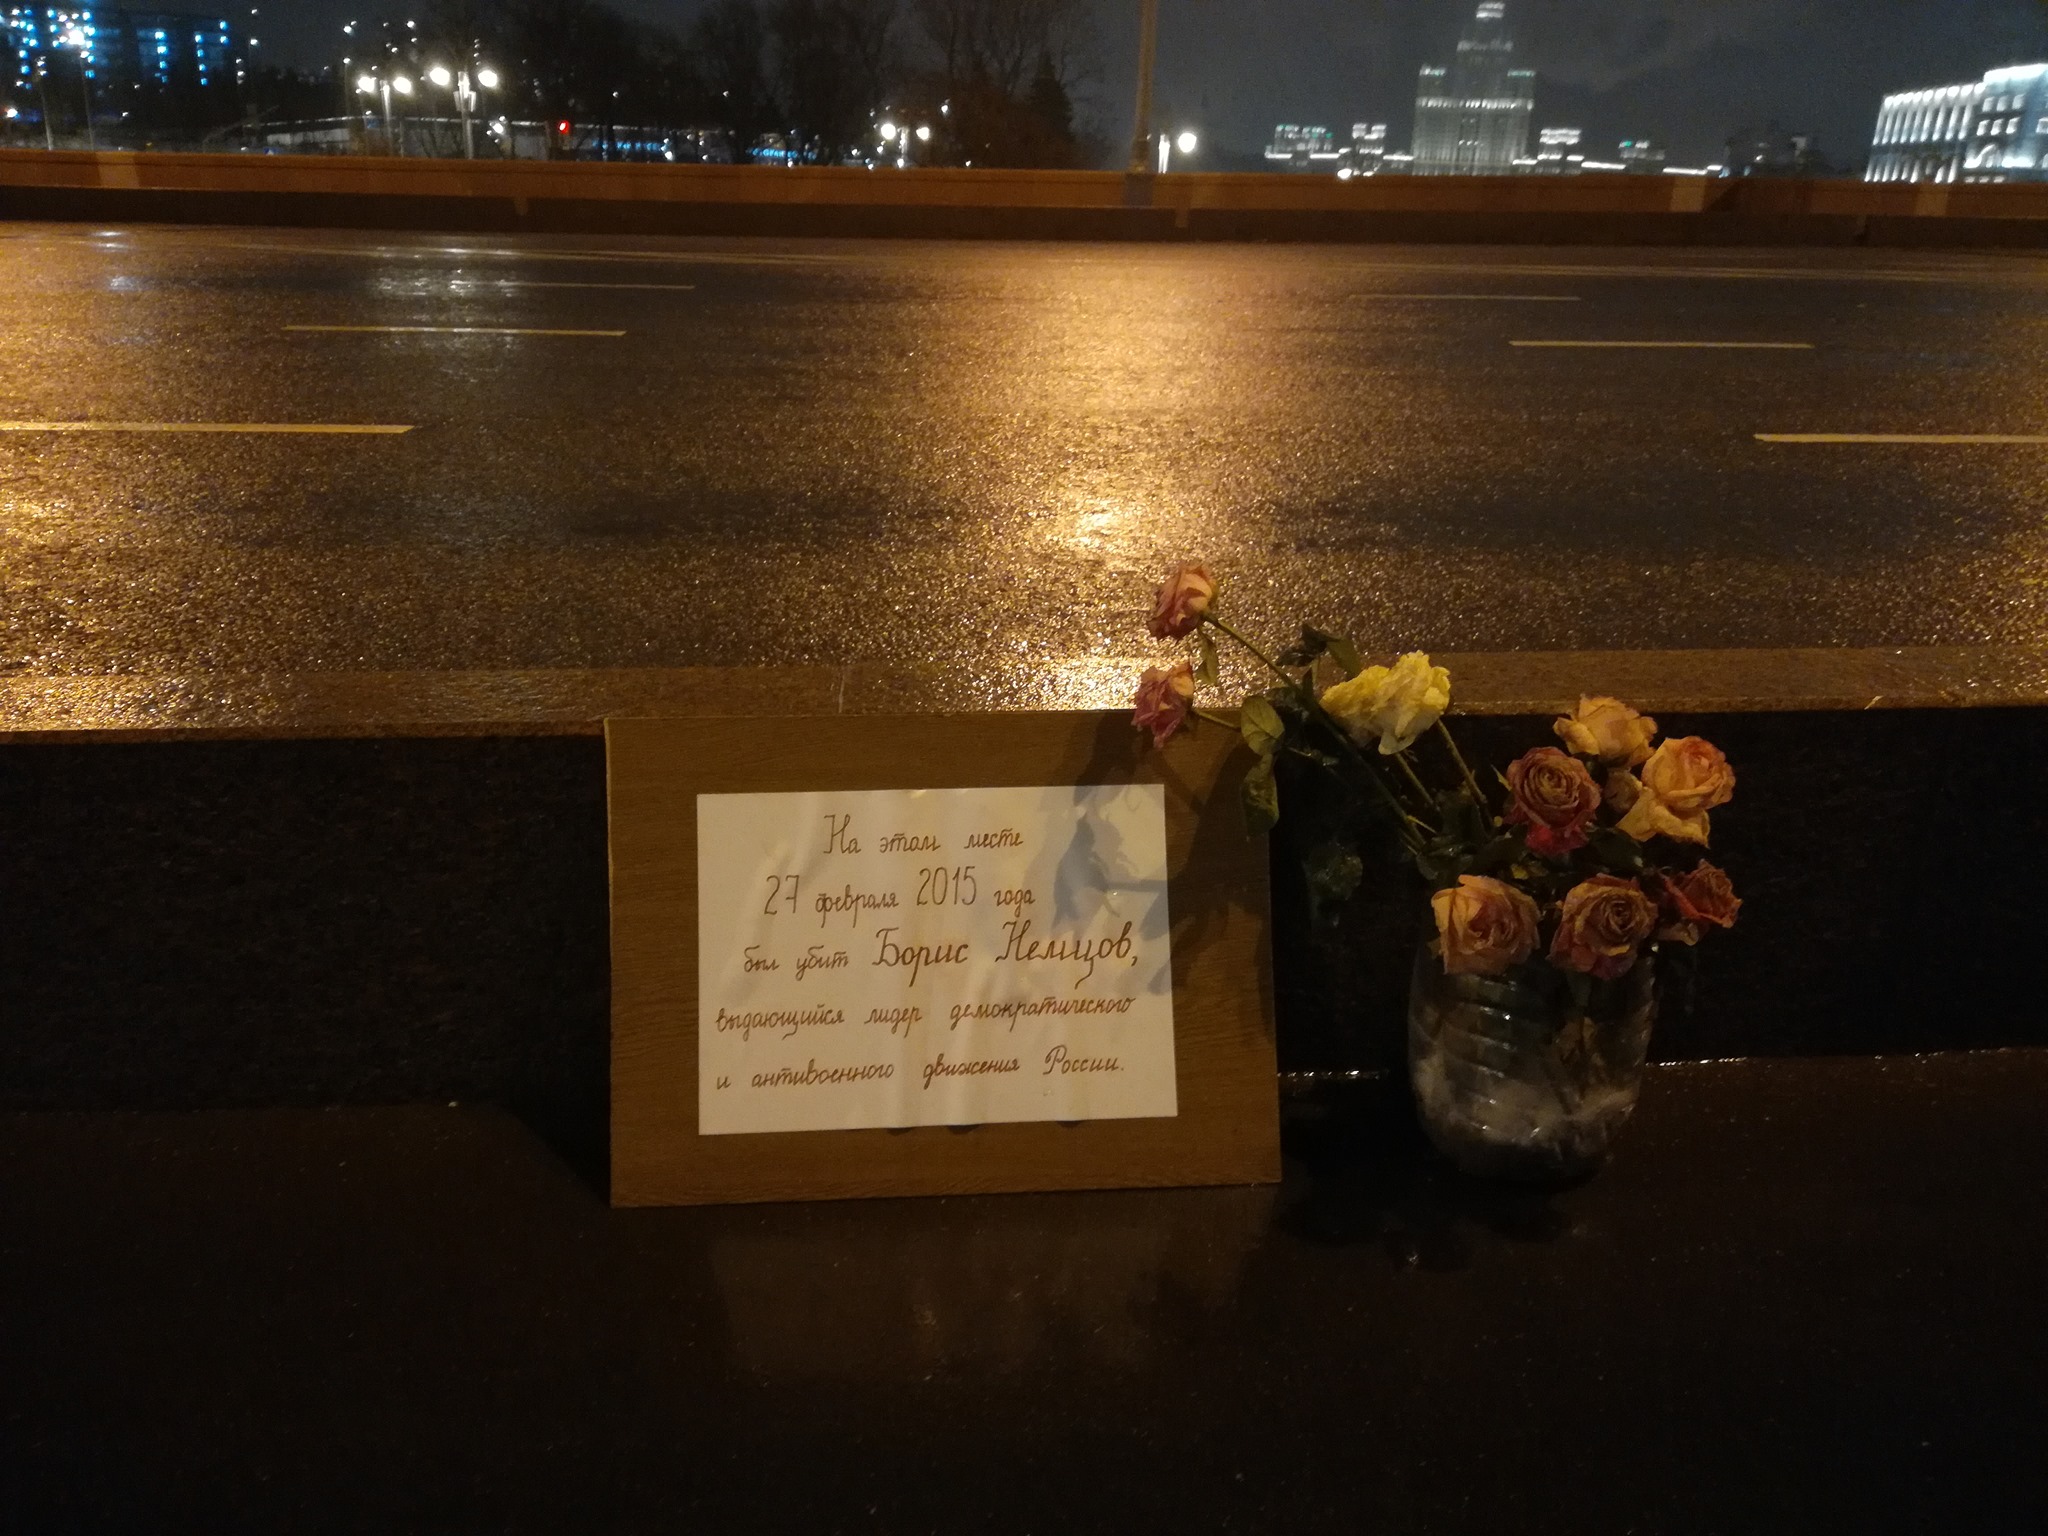 Вечер 23 8. Замоскворецкий мост Немцов. Немцов мост значок. Немцов мост записка "он действительно ебанулся".